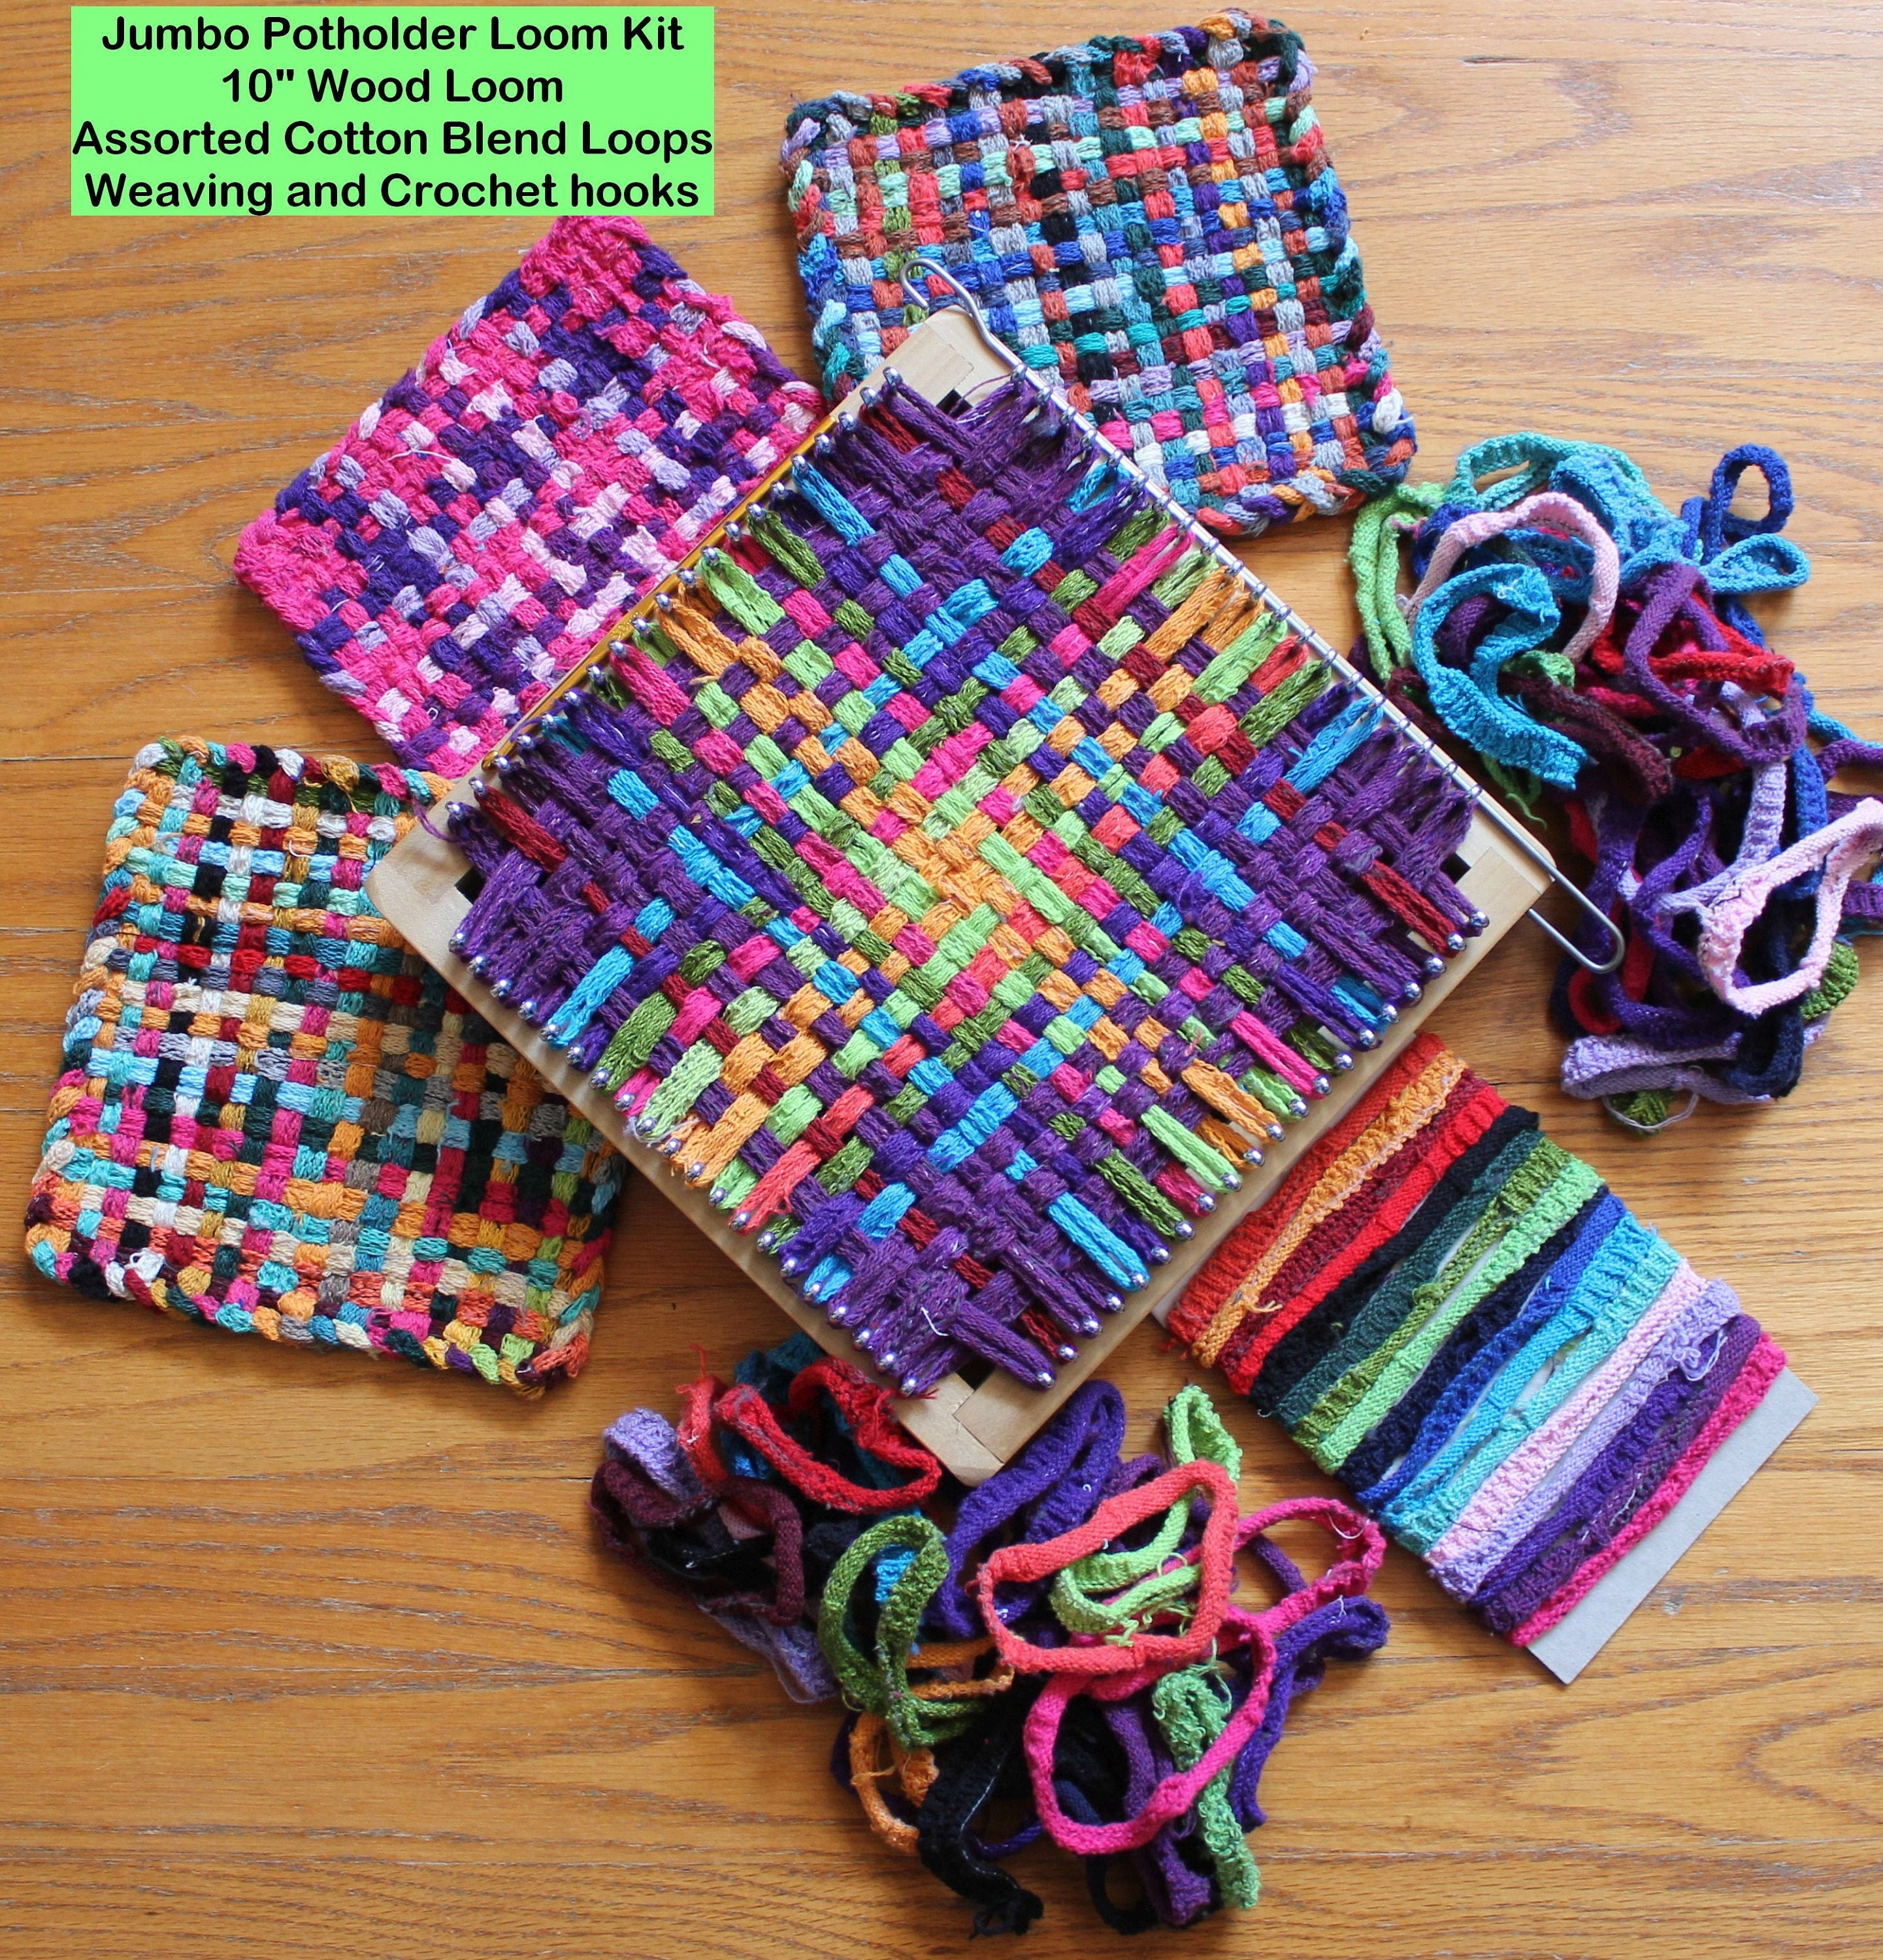 7 Metal Loom by Harrisville Traditional Potholder Loom Adults Kids Crafts for Children DIY Potholder Kit